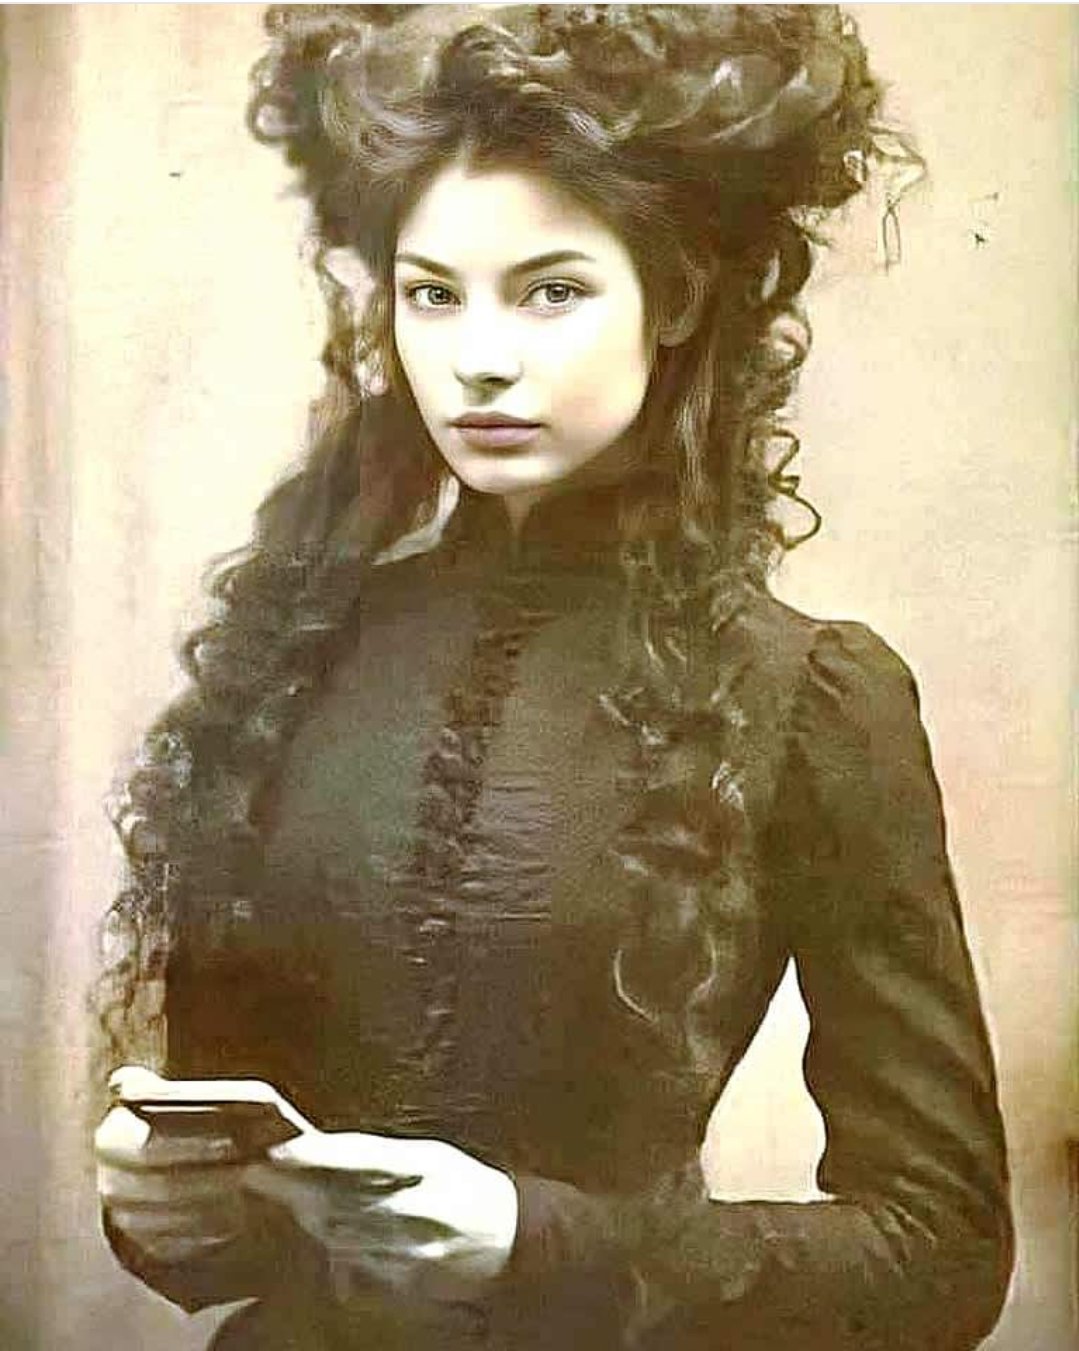 La leyenda de Camille Monfort escribió “La vampira amazona” en 1896.